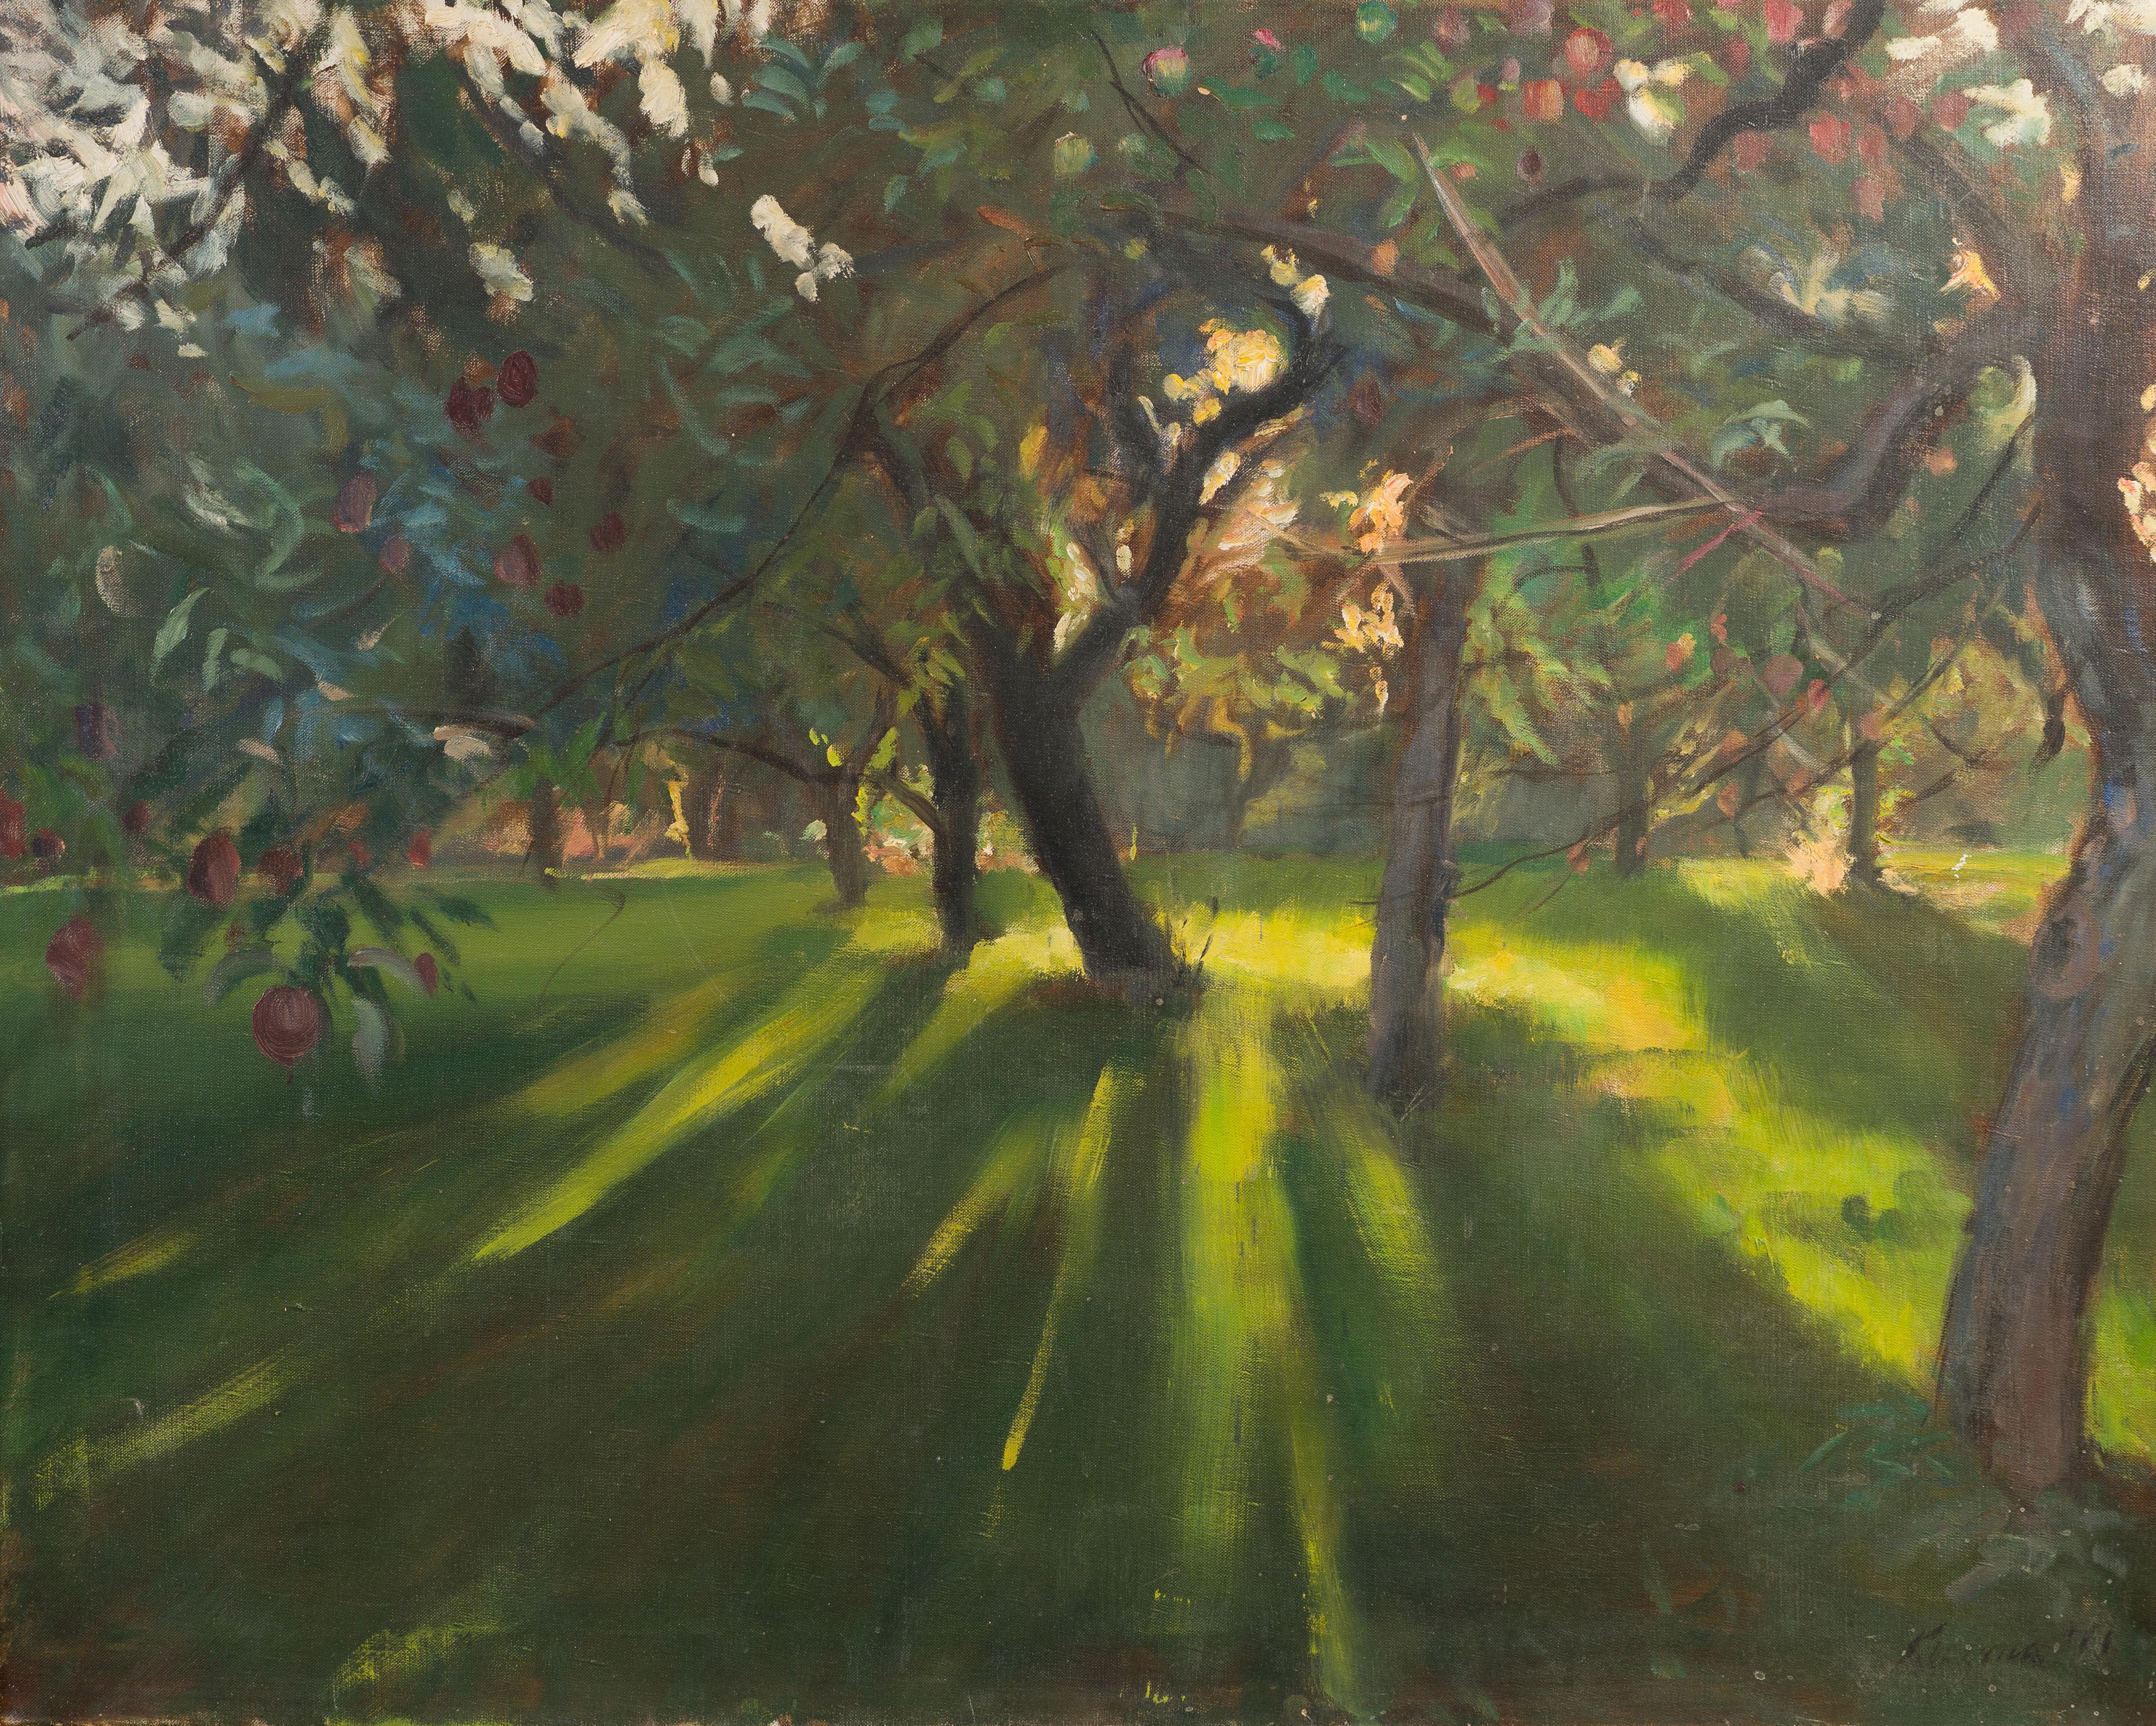 Vintage American Modernist Sunburst Apple Orchard Landscape Oil Painting Signed 1